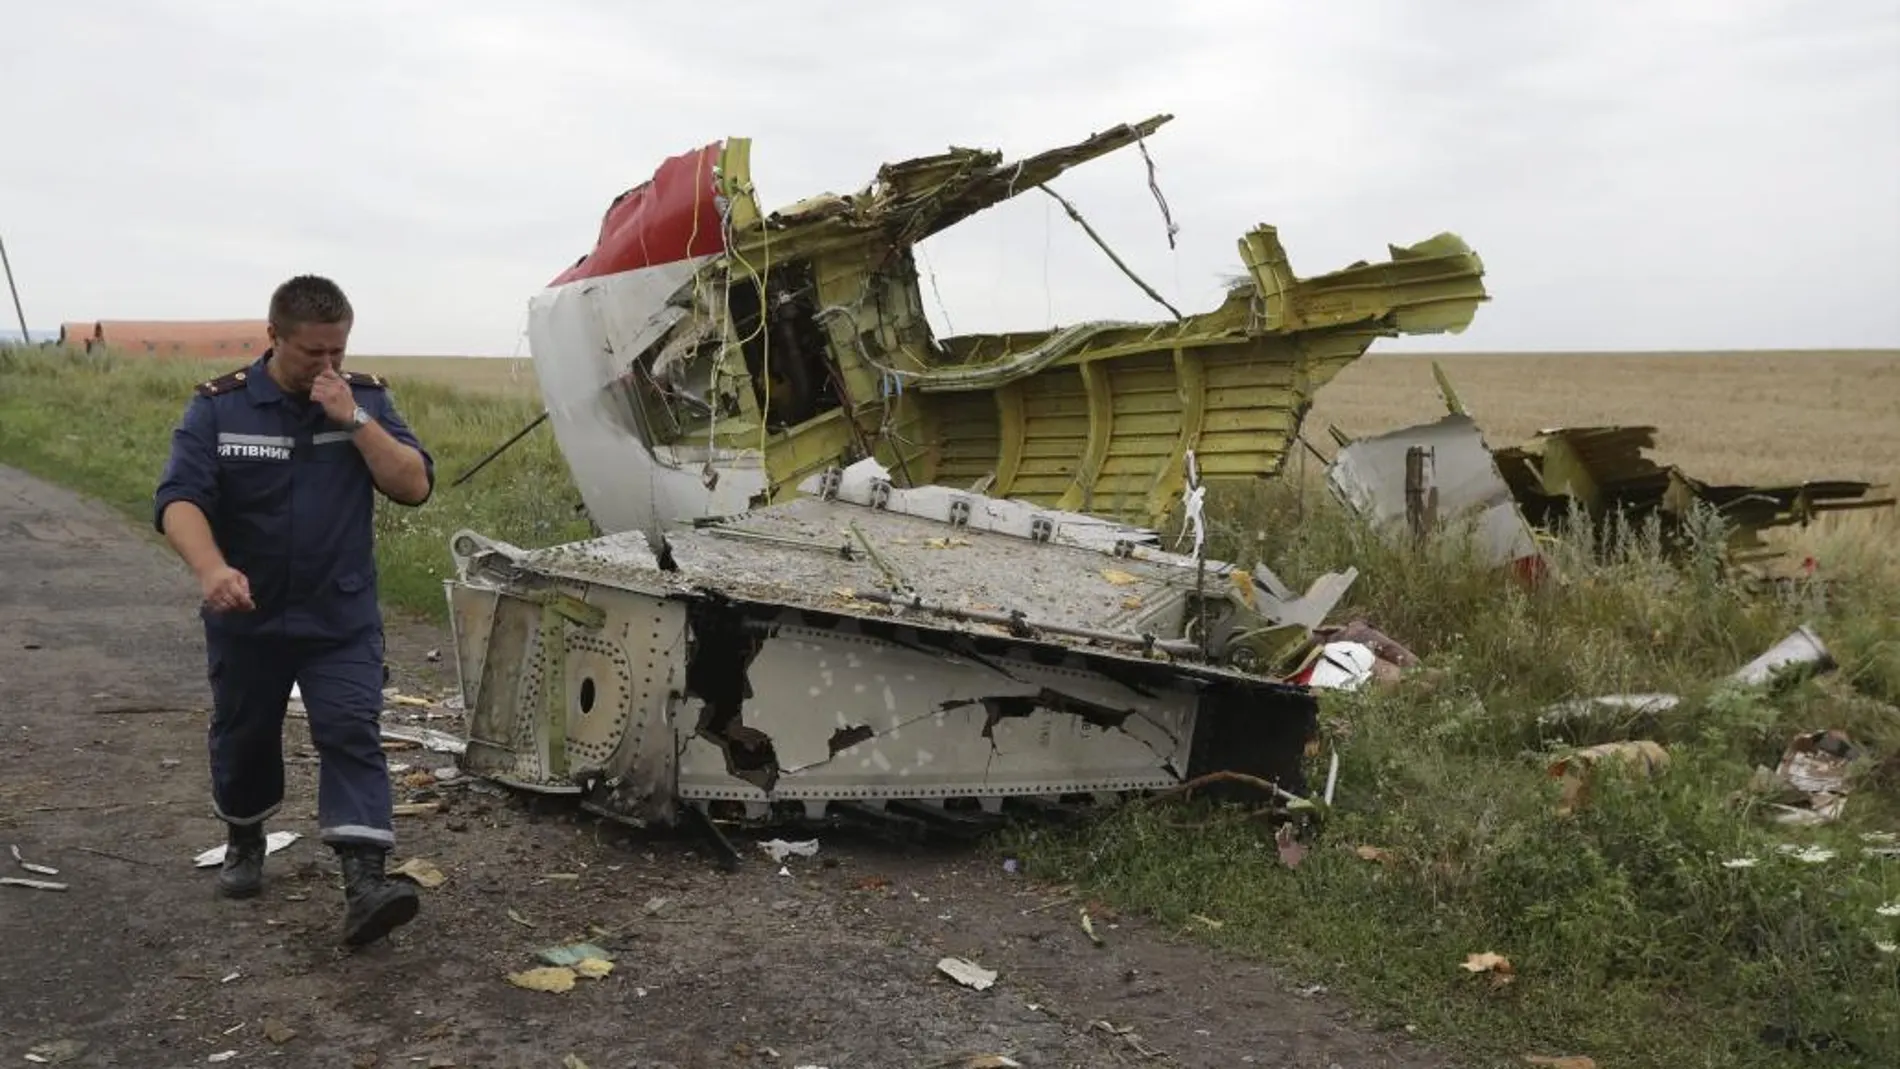 El Boeing 777 del vuelo MH17 fue derribado por un misil en Donetsk (Ucrania), según la investigación internacional